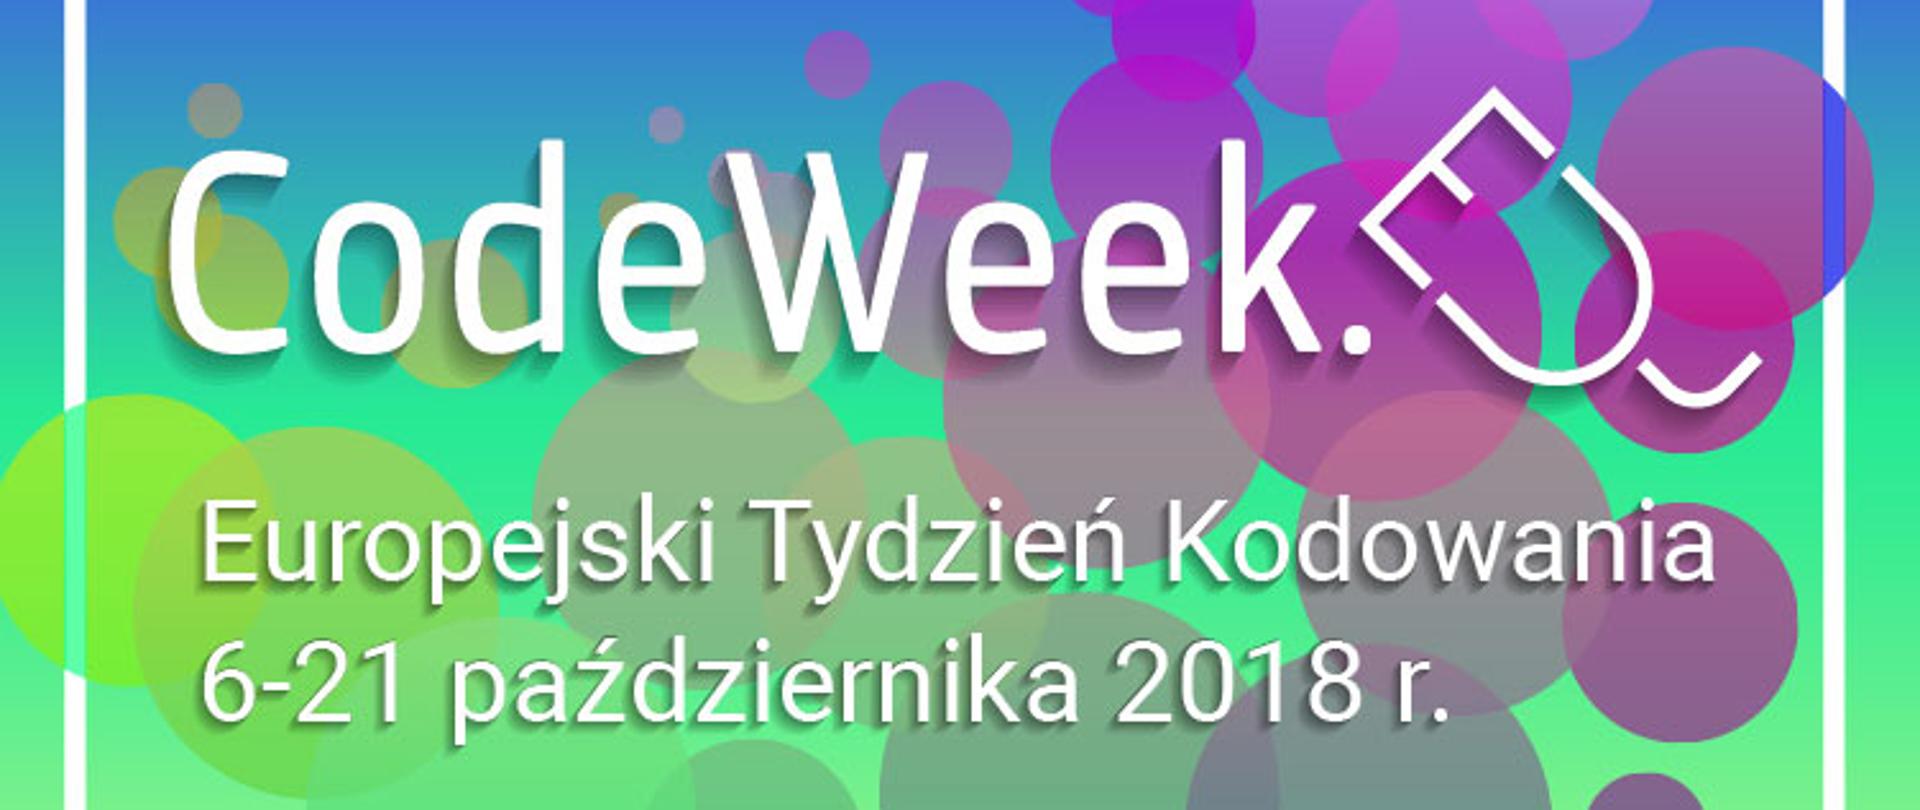 Ilustracja prezentuje napis CodeWeek. Europejski Tydzień Kodowania 6-21 października 2018 r. 